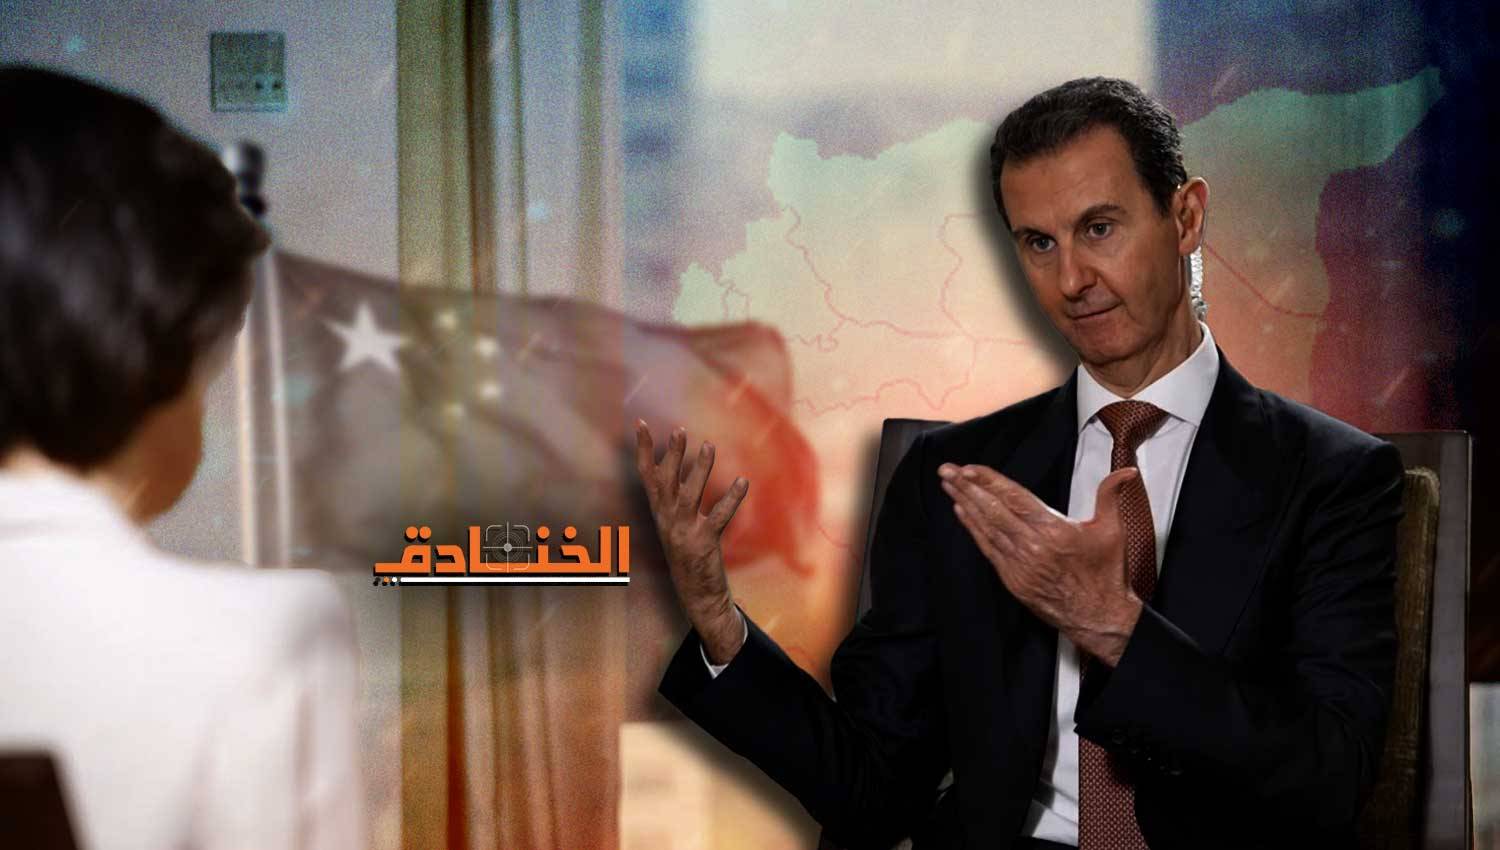 الرئيس الأسد: الليبرالية الغربية والتطرّف خطران يهدّدان المنطقة